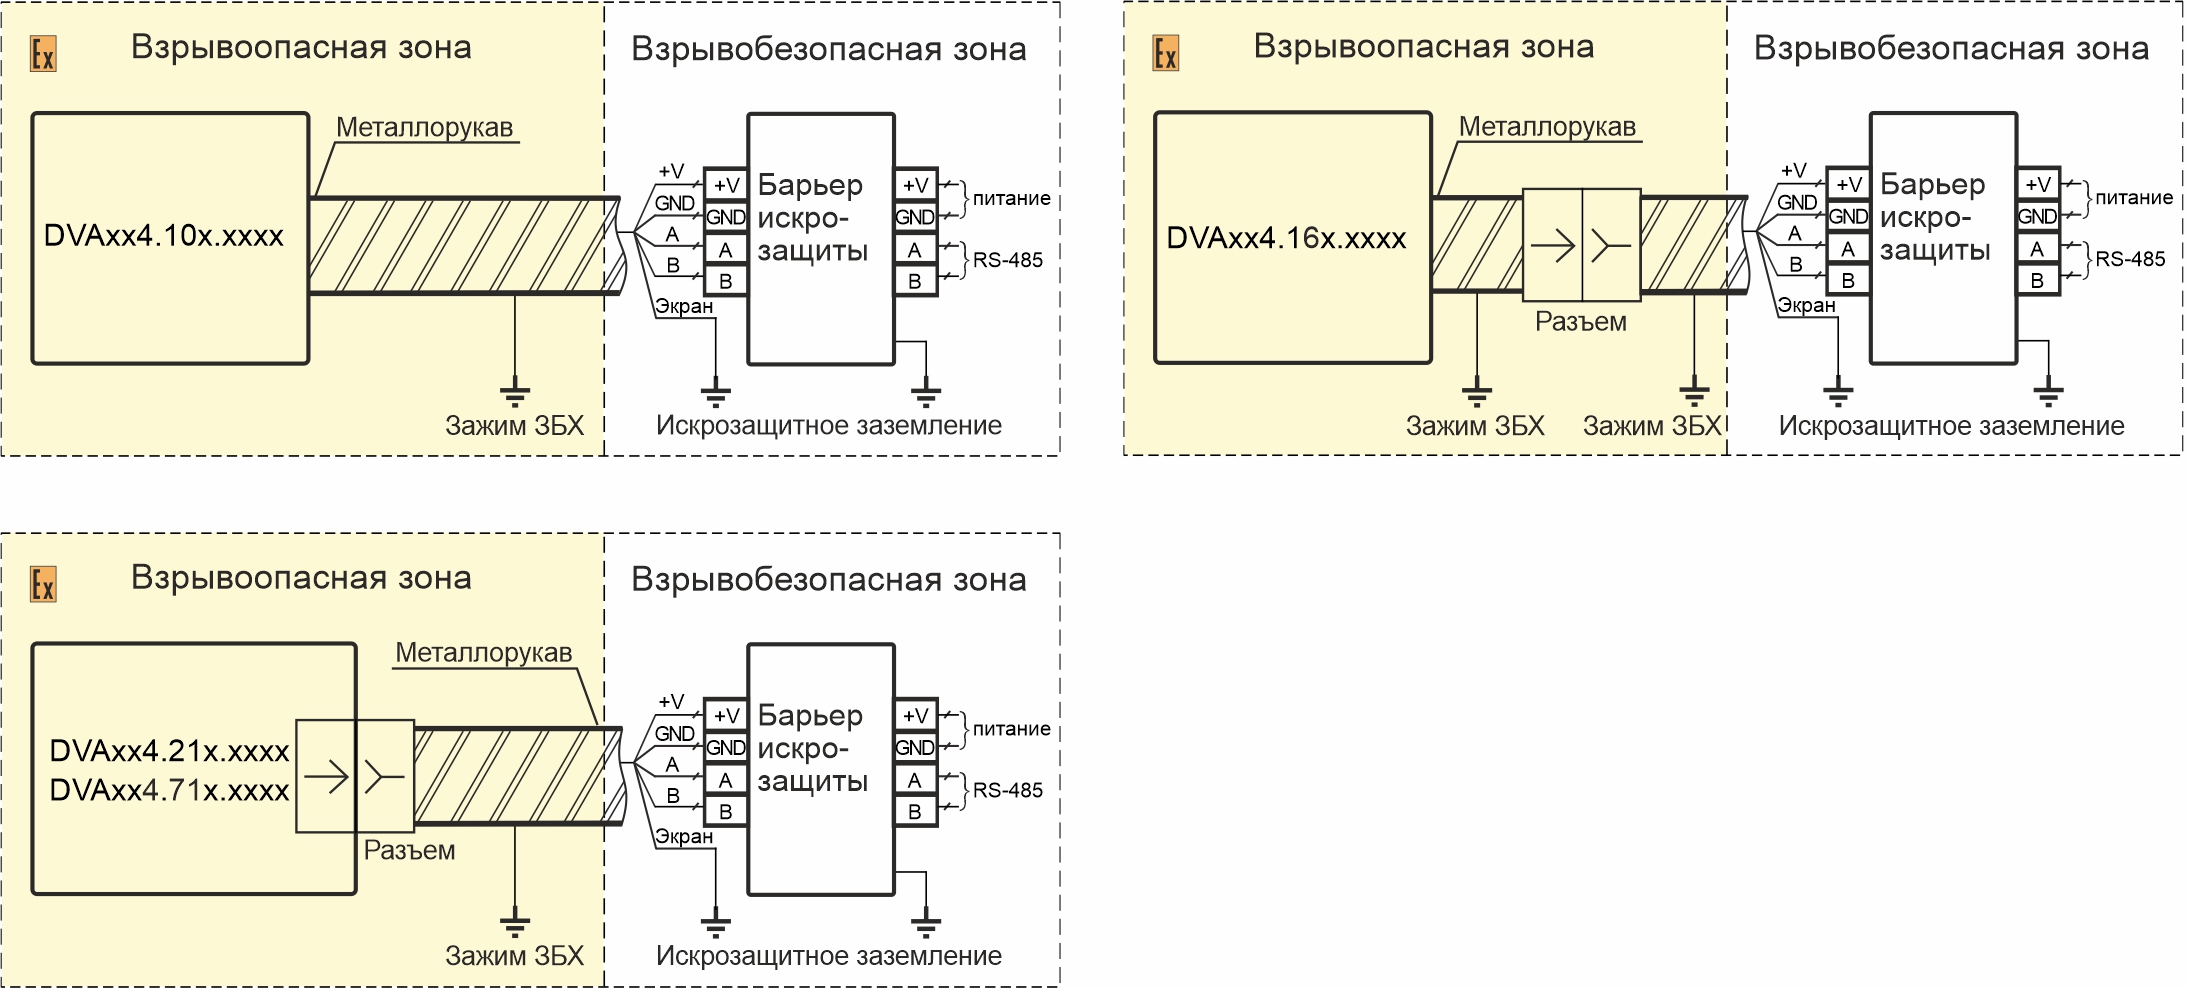 Схемы подключения датчиков вибрации DVA